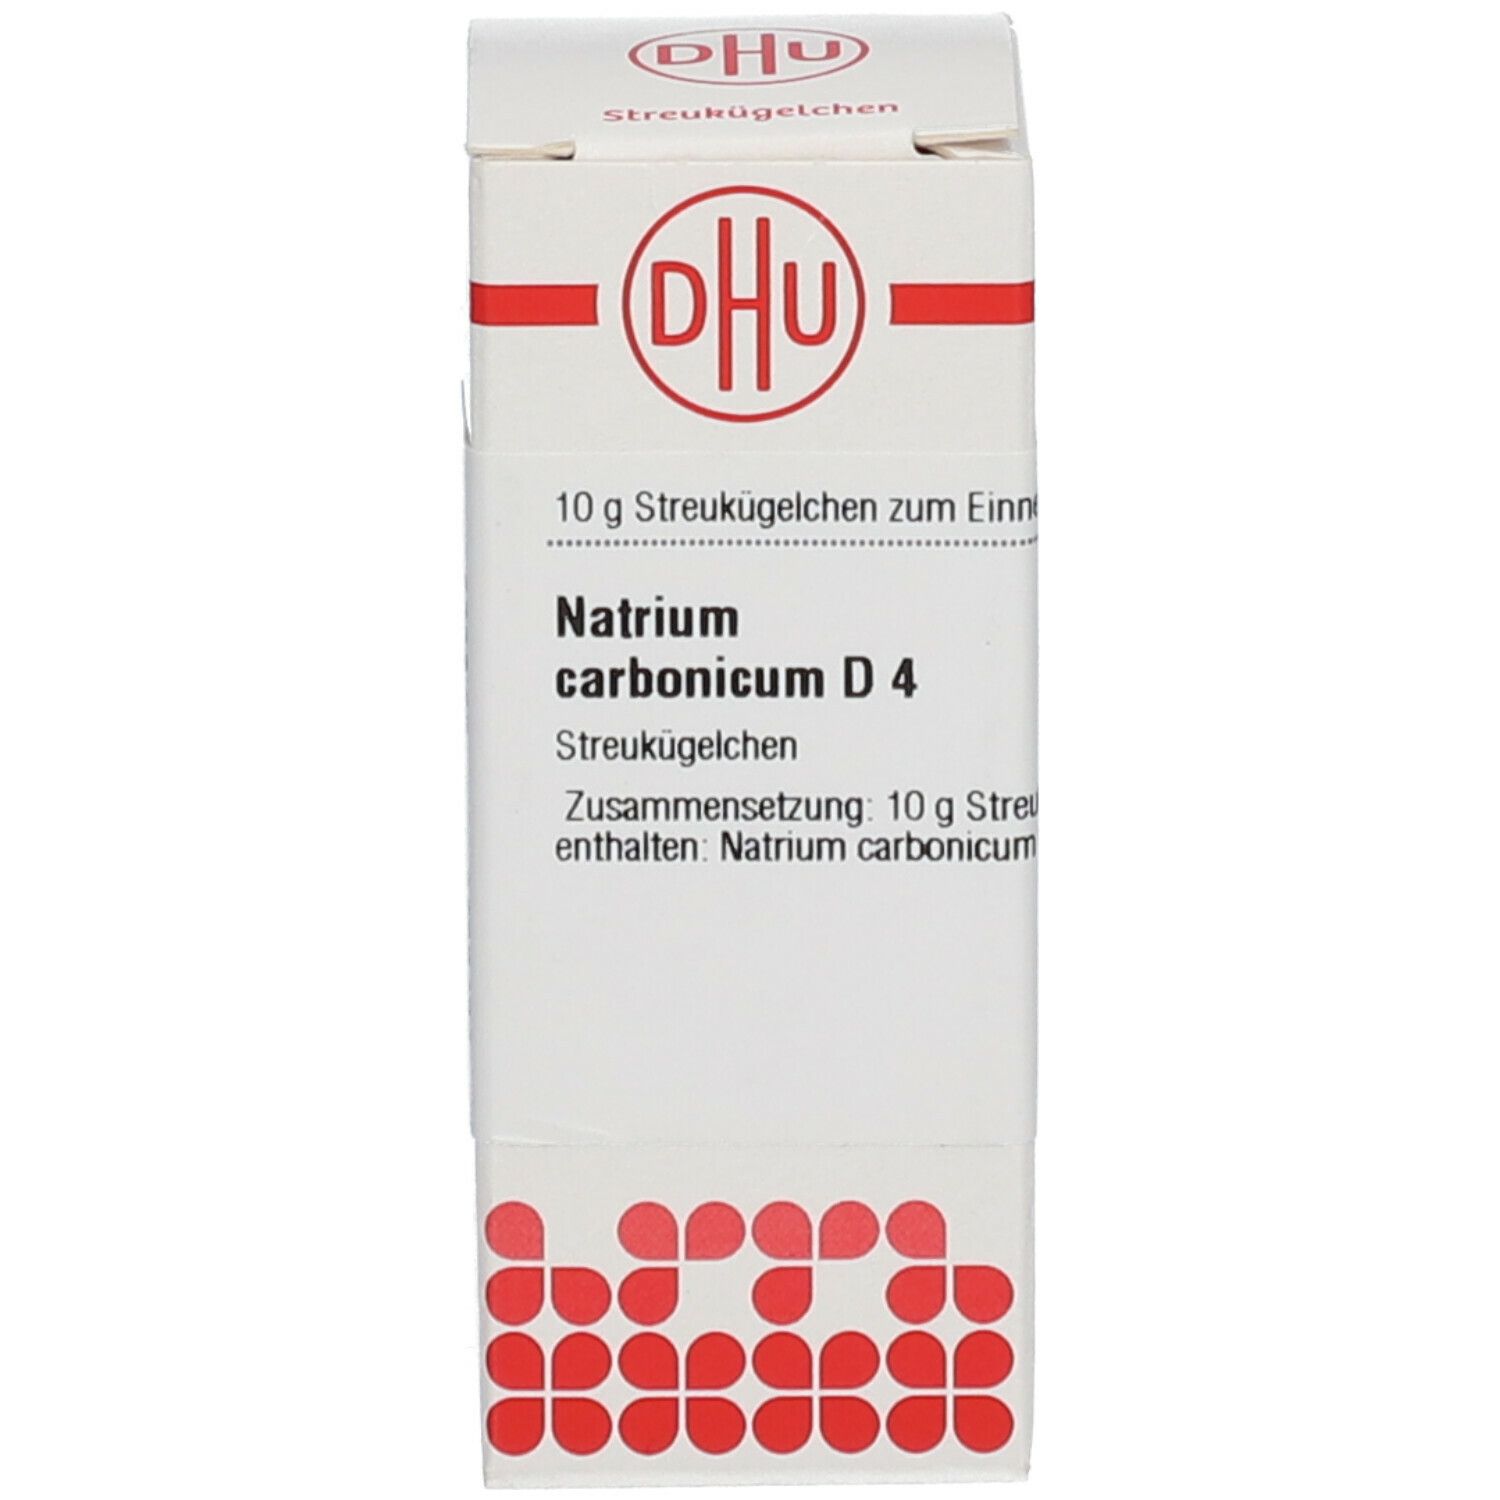 DHU Natrium Carbonicum D4